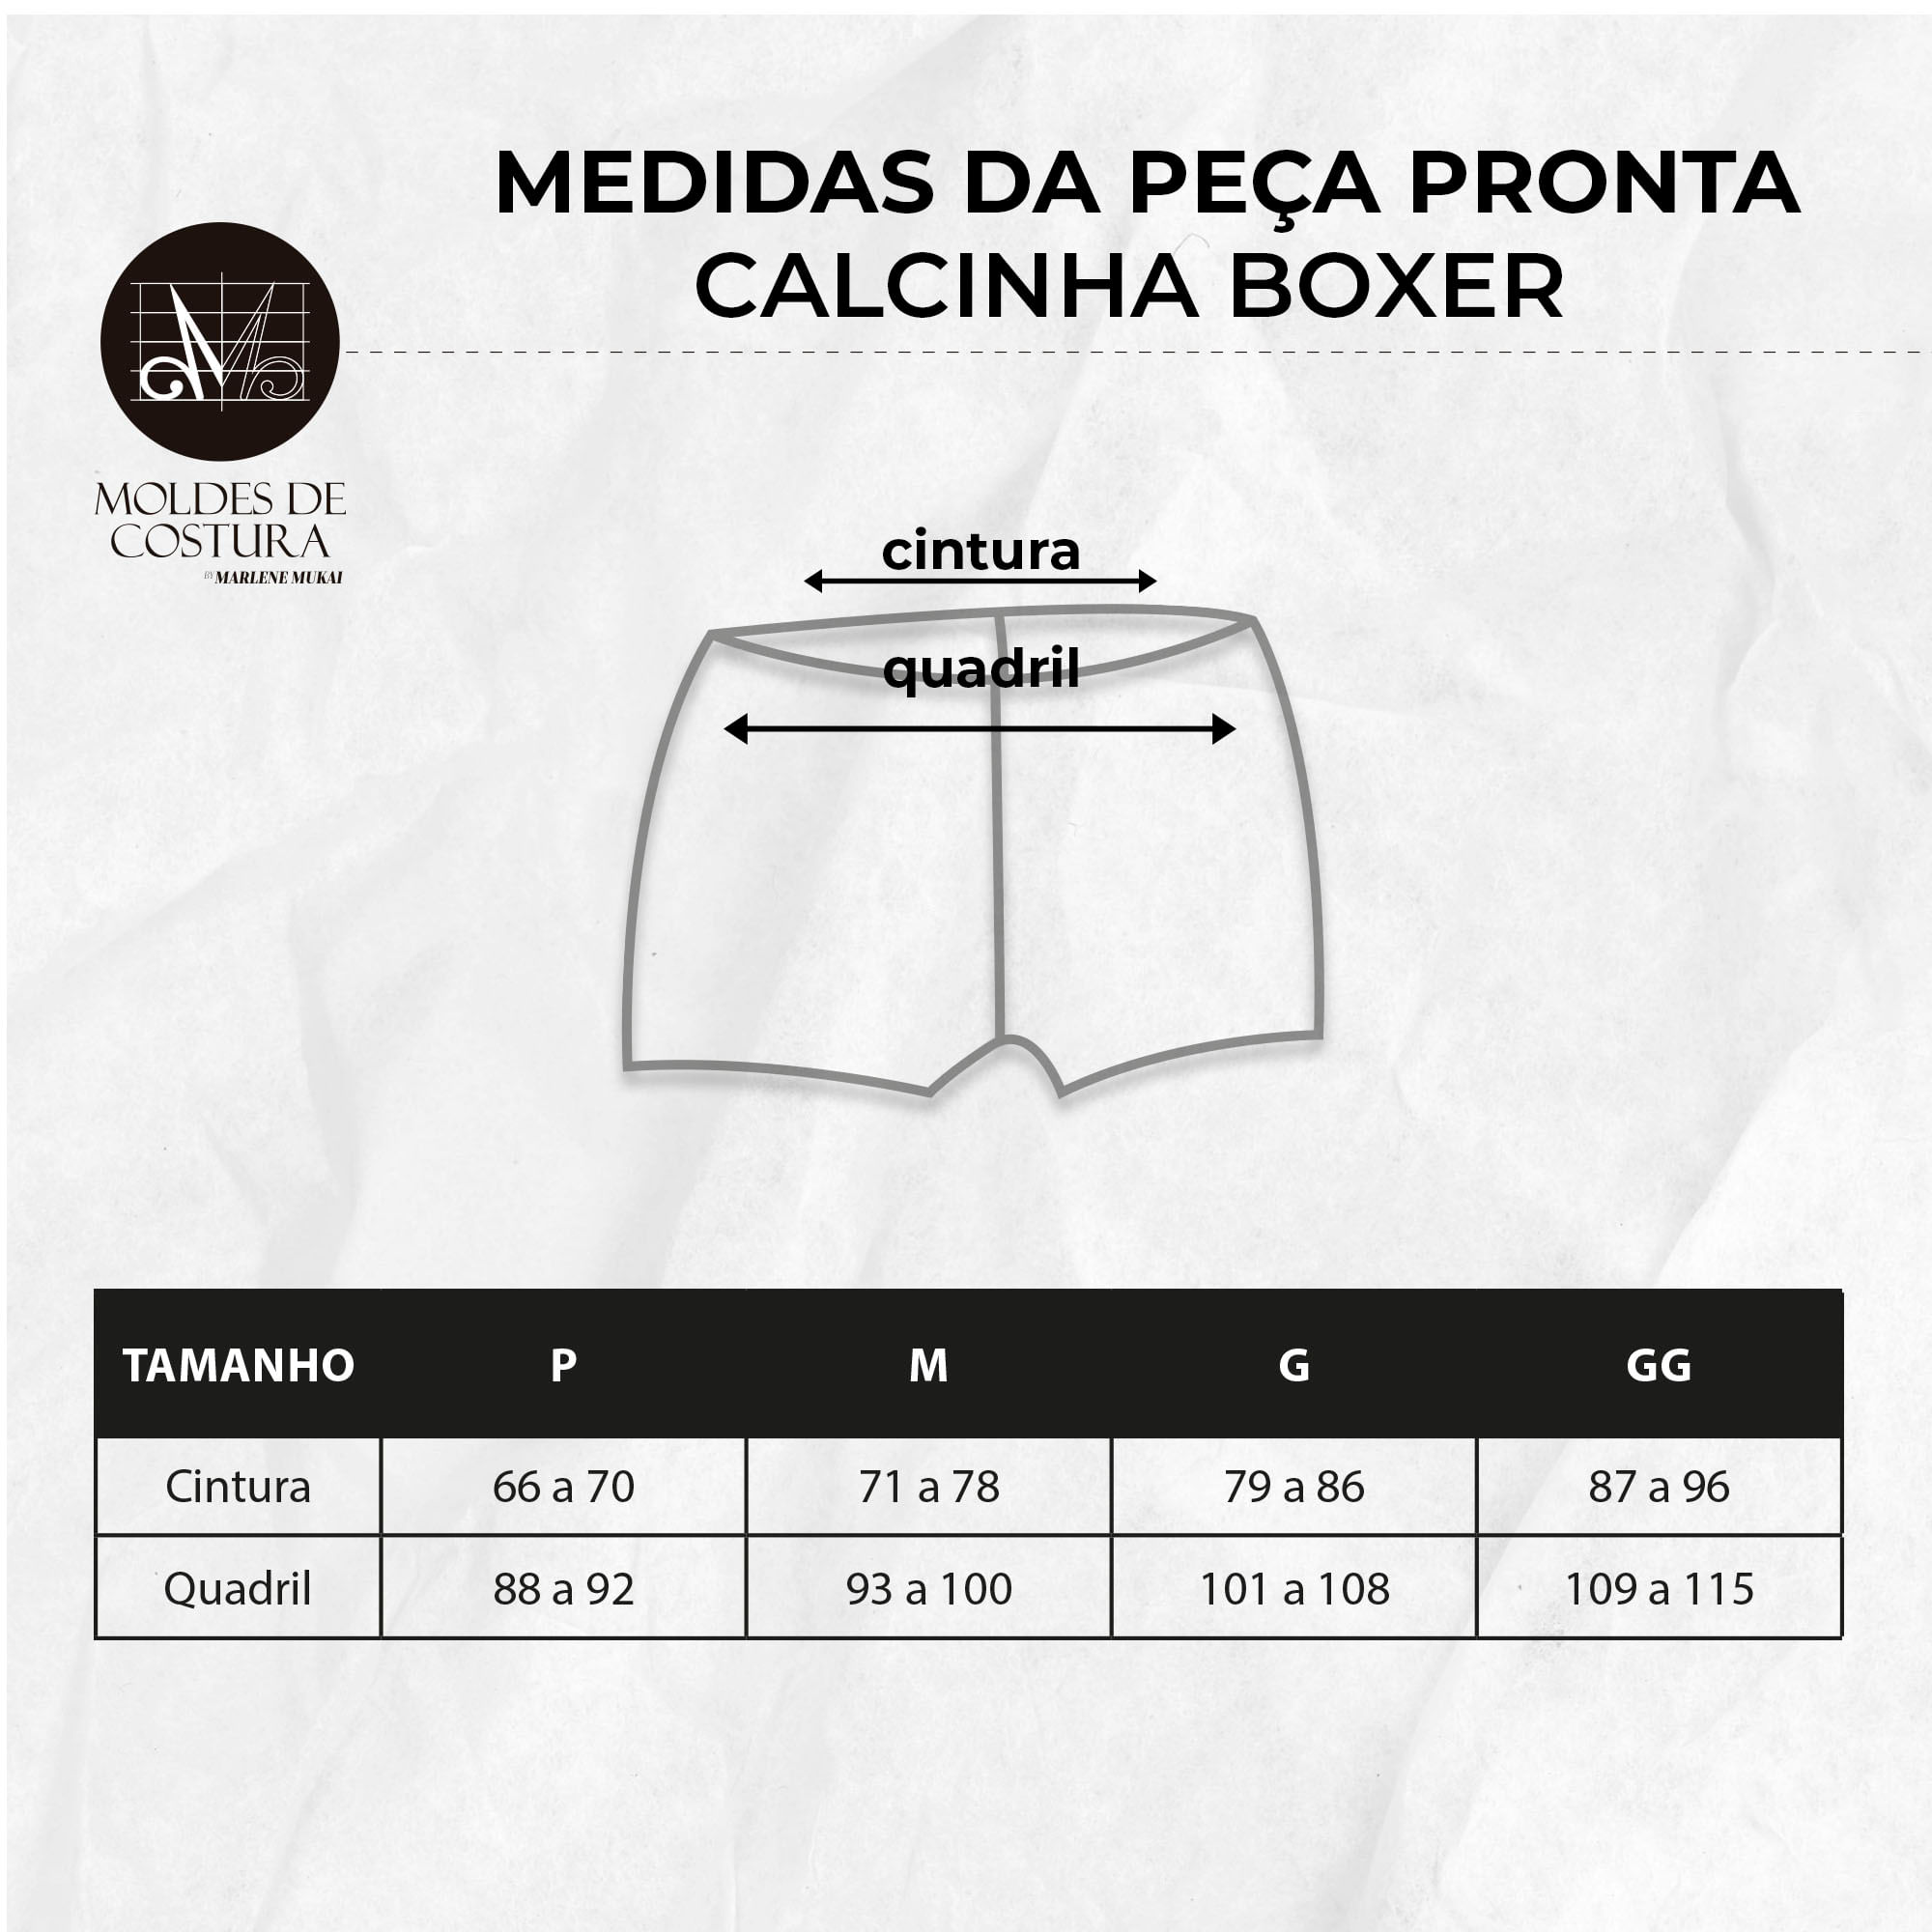 Molde-lingerie-calcinha-boxer-16792-2